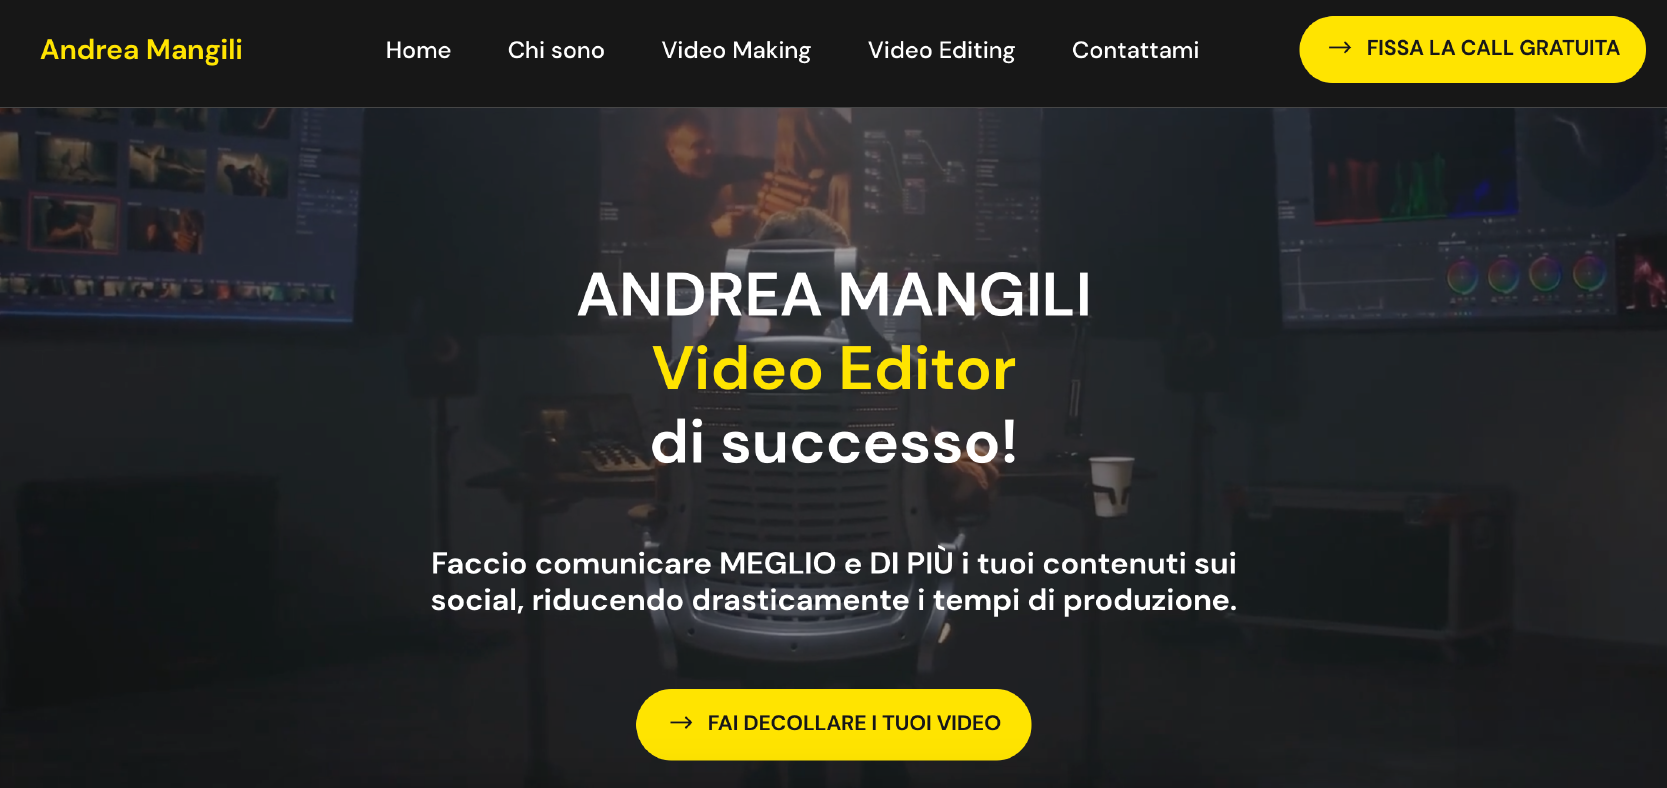 Screen del sito Andrea Mangili Video Maker & Video Editor